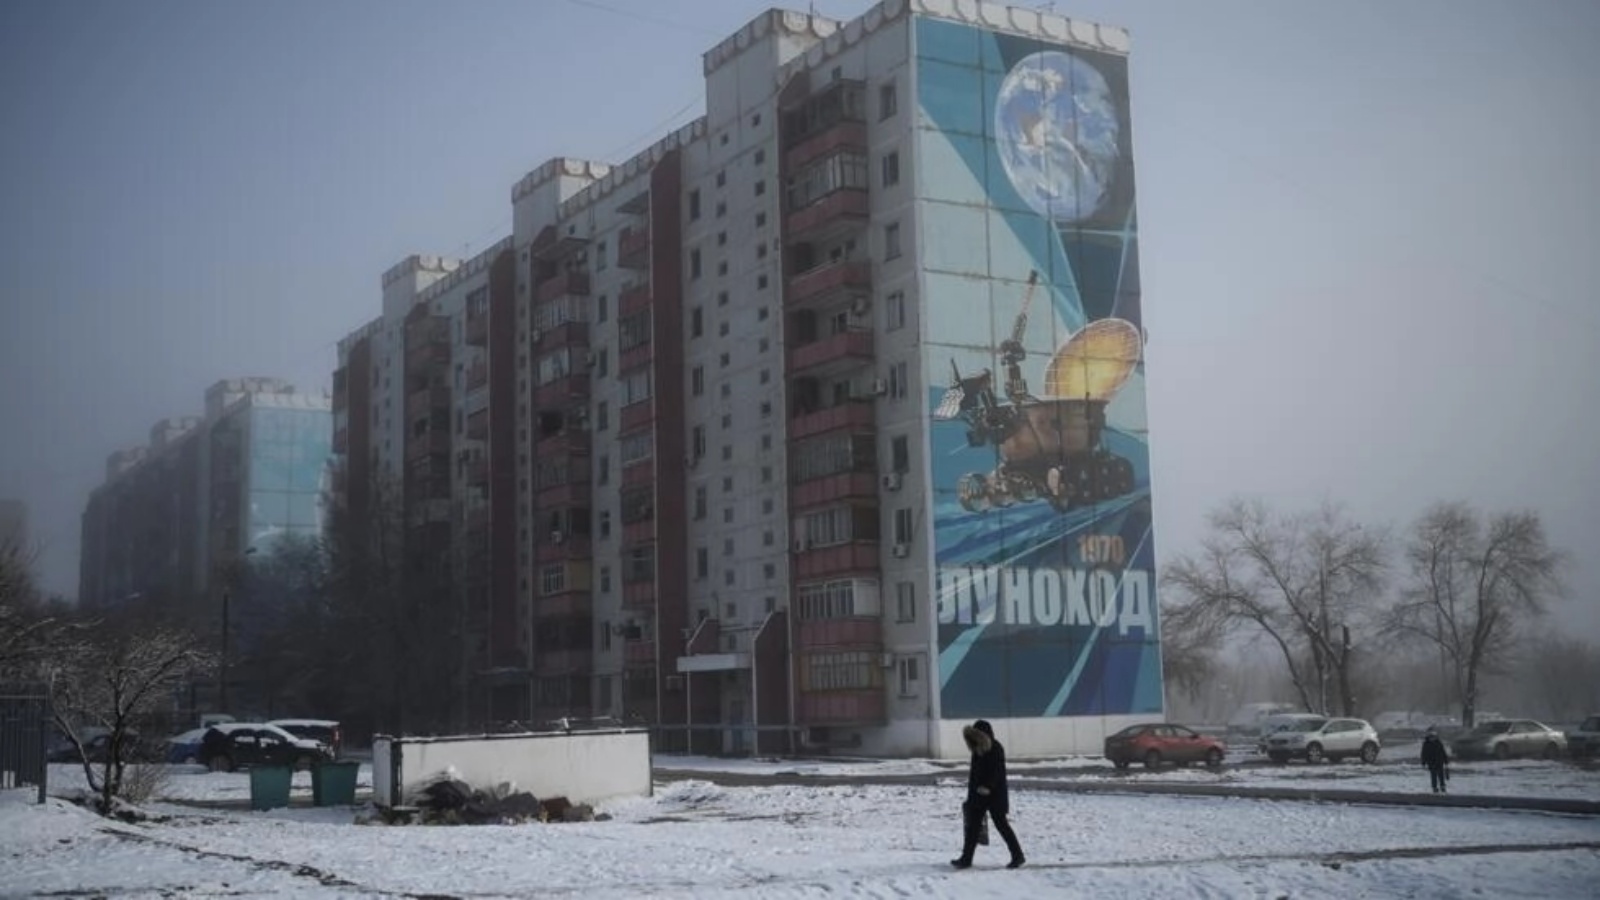 لوحة جدارية تمثل مركبة فضائية على أحد المباني في مدينة بايكونور في كازاخستان في 6 ديسمبر 2021